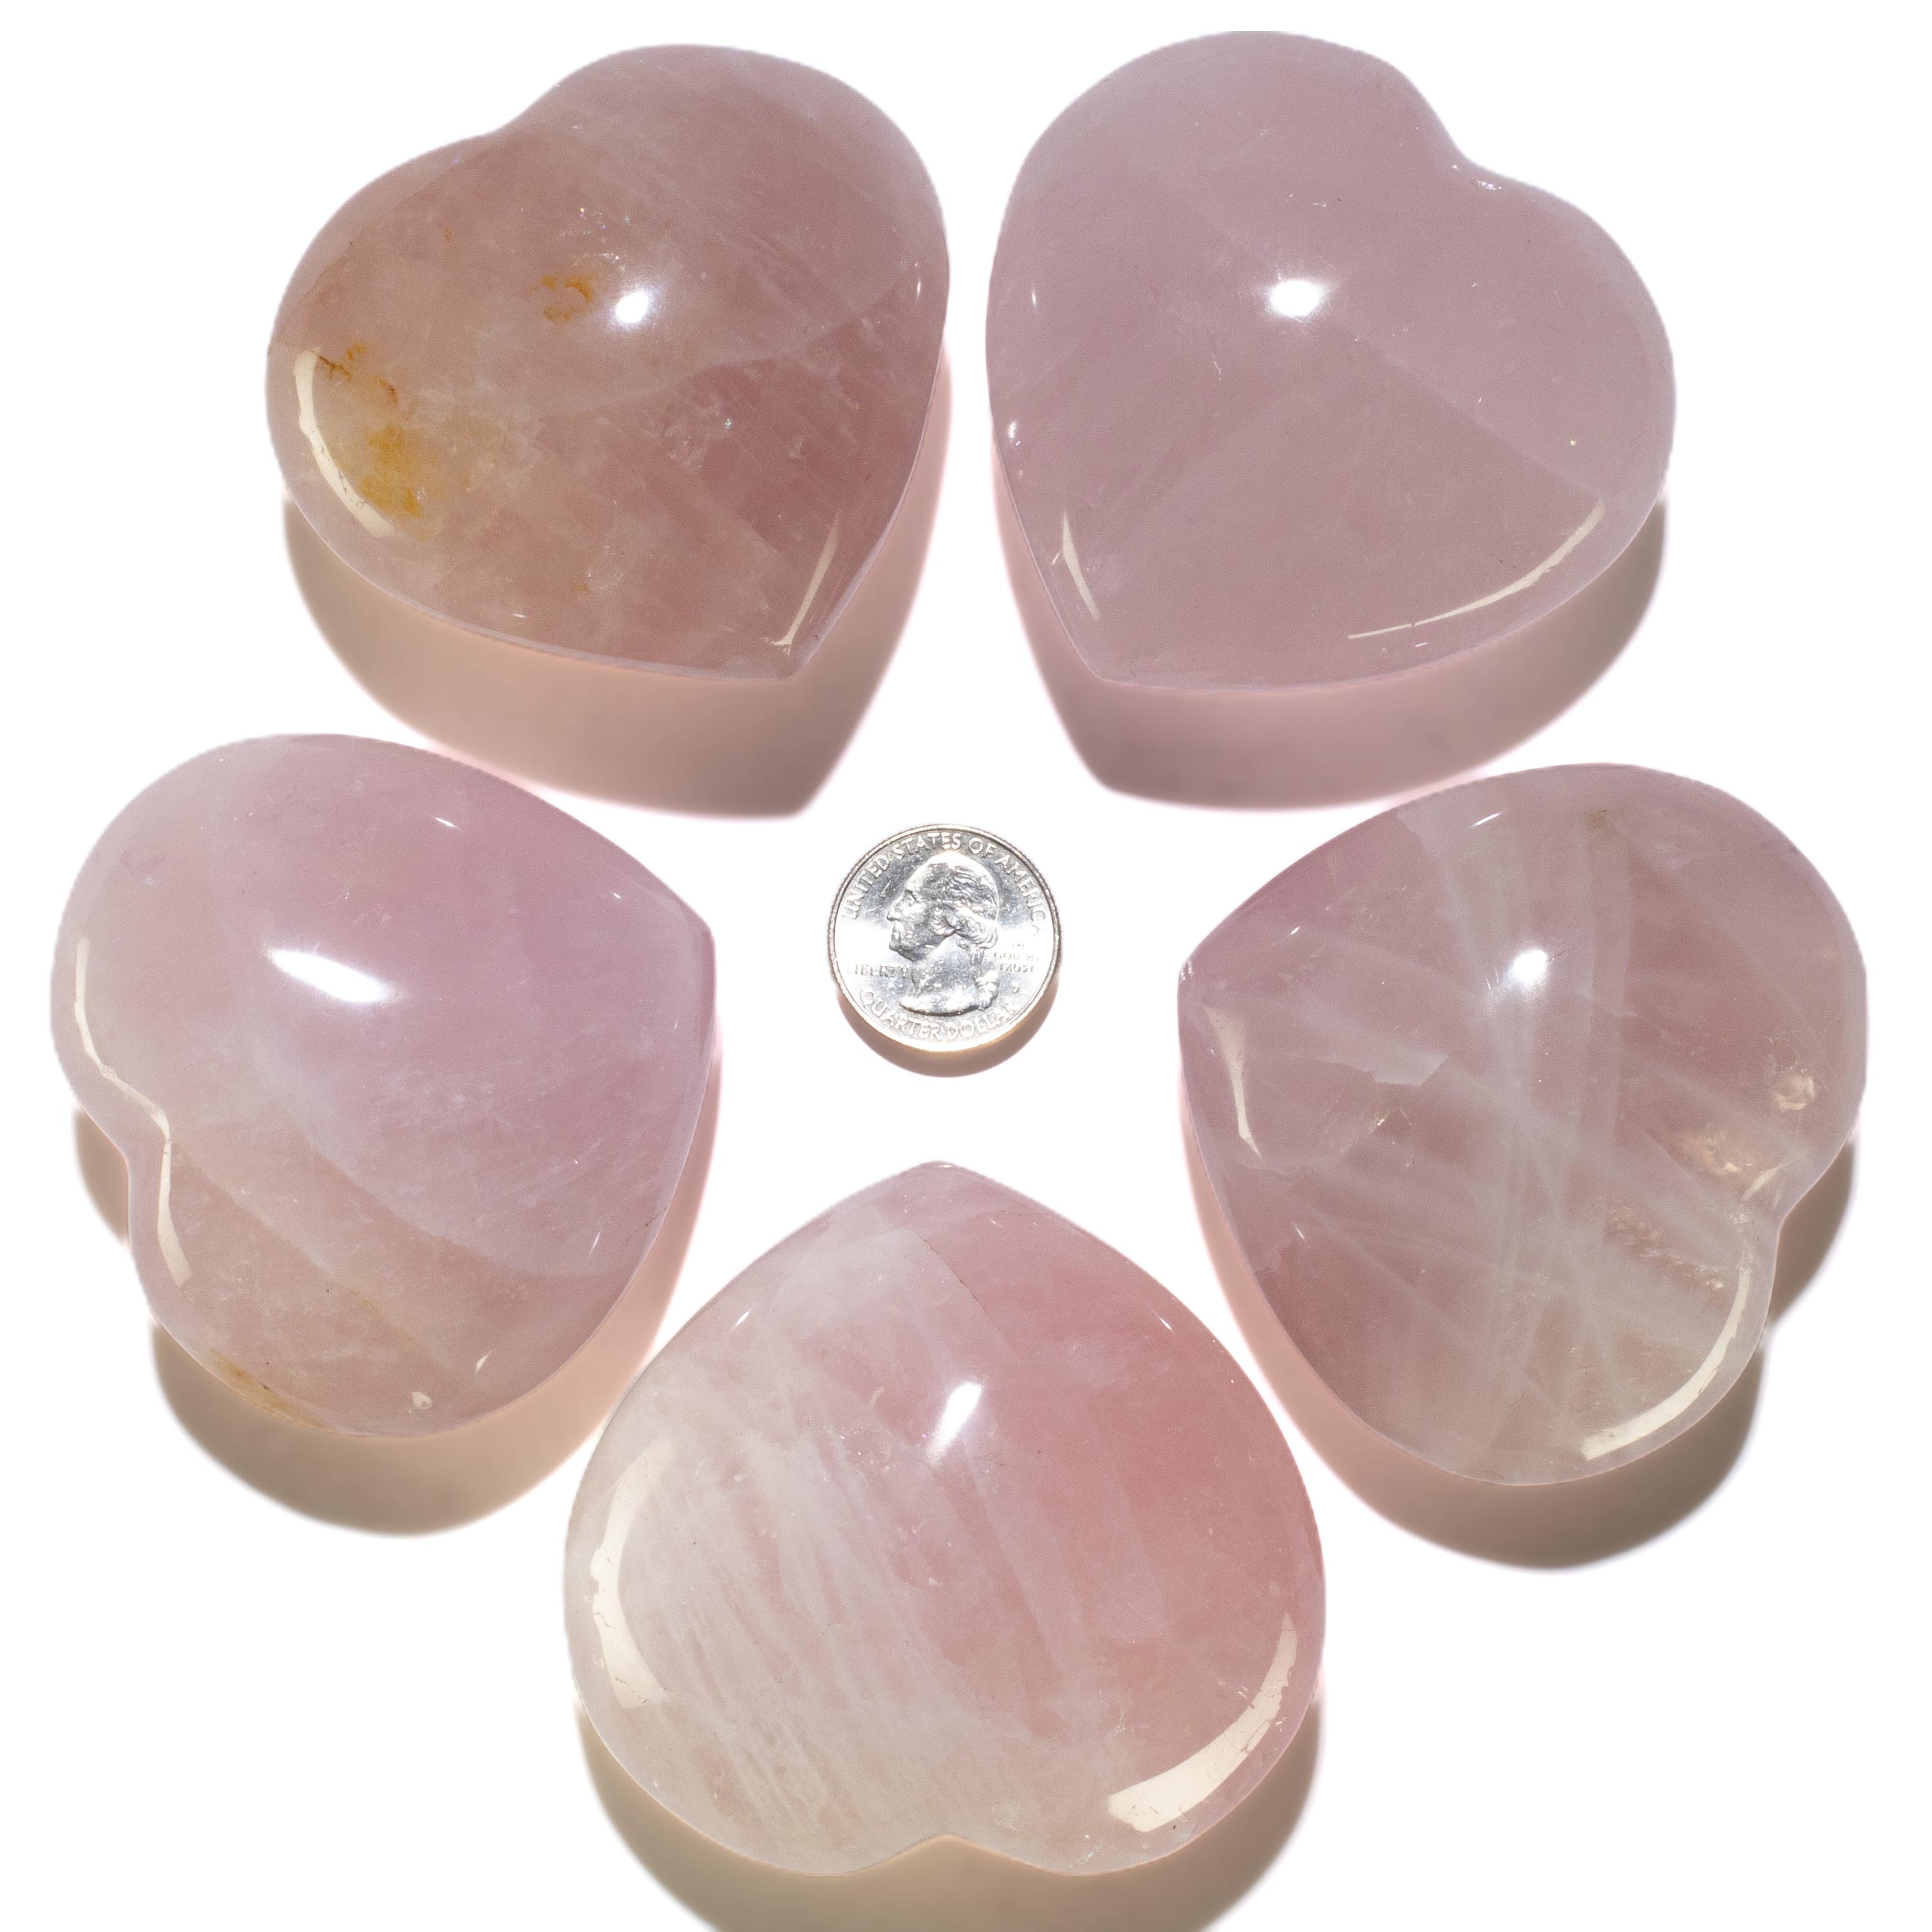 KALIFANO Rose Quartz Rose Quartz Gemstone Heart Carving 200g / 3in. GH200-RQ